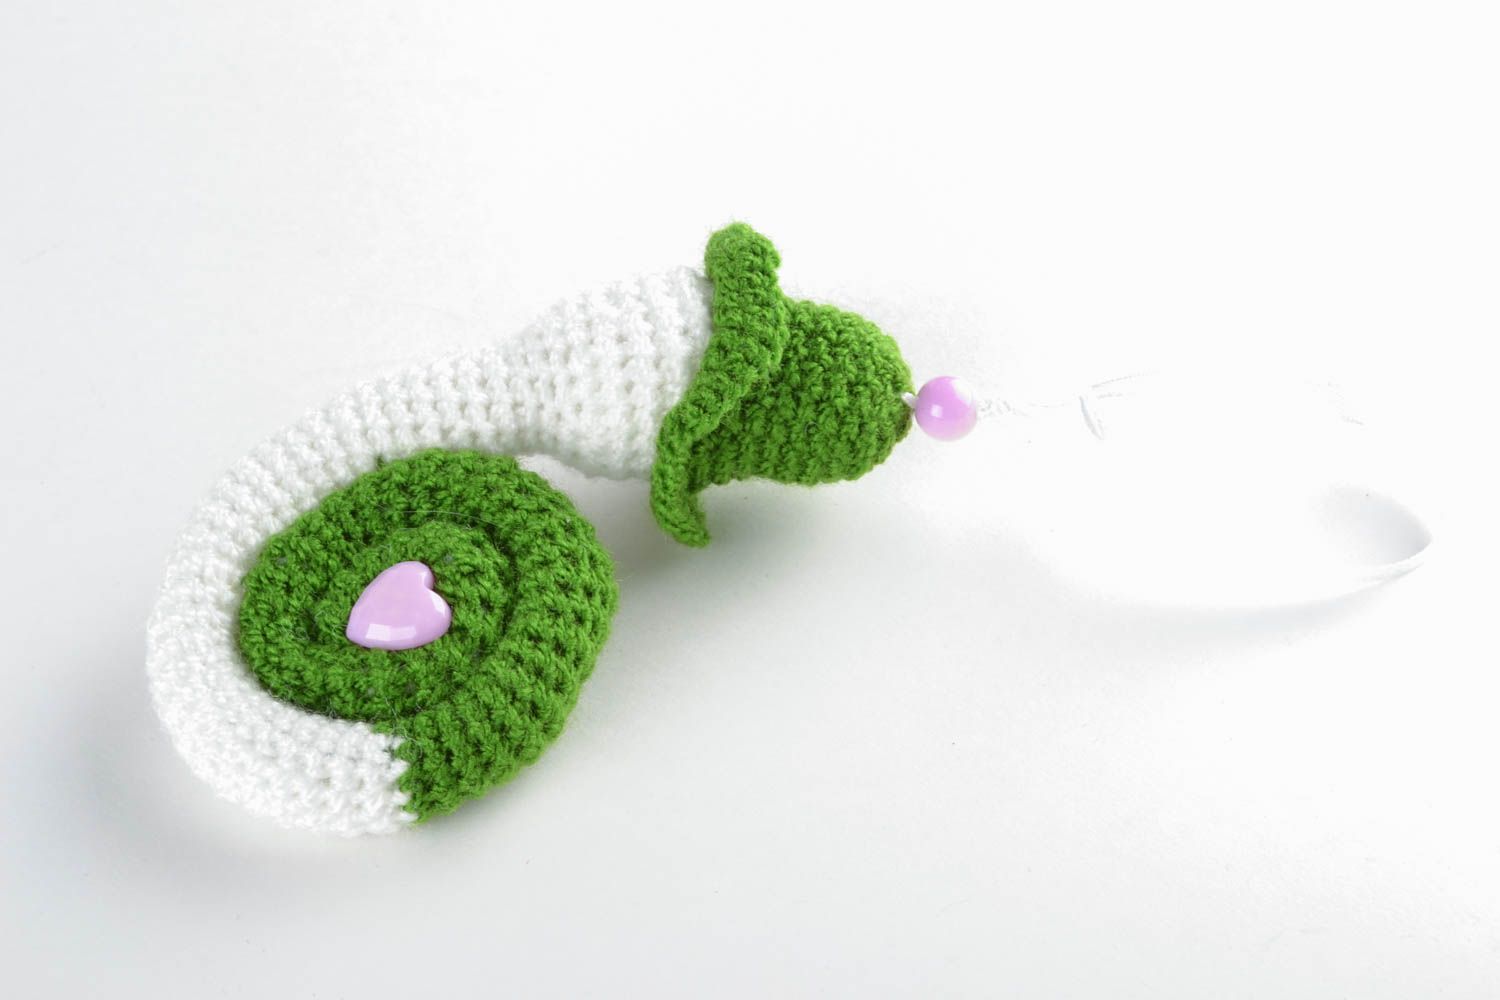 Handmade crochet toy snail for children photo 3